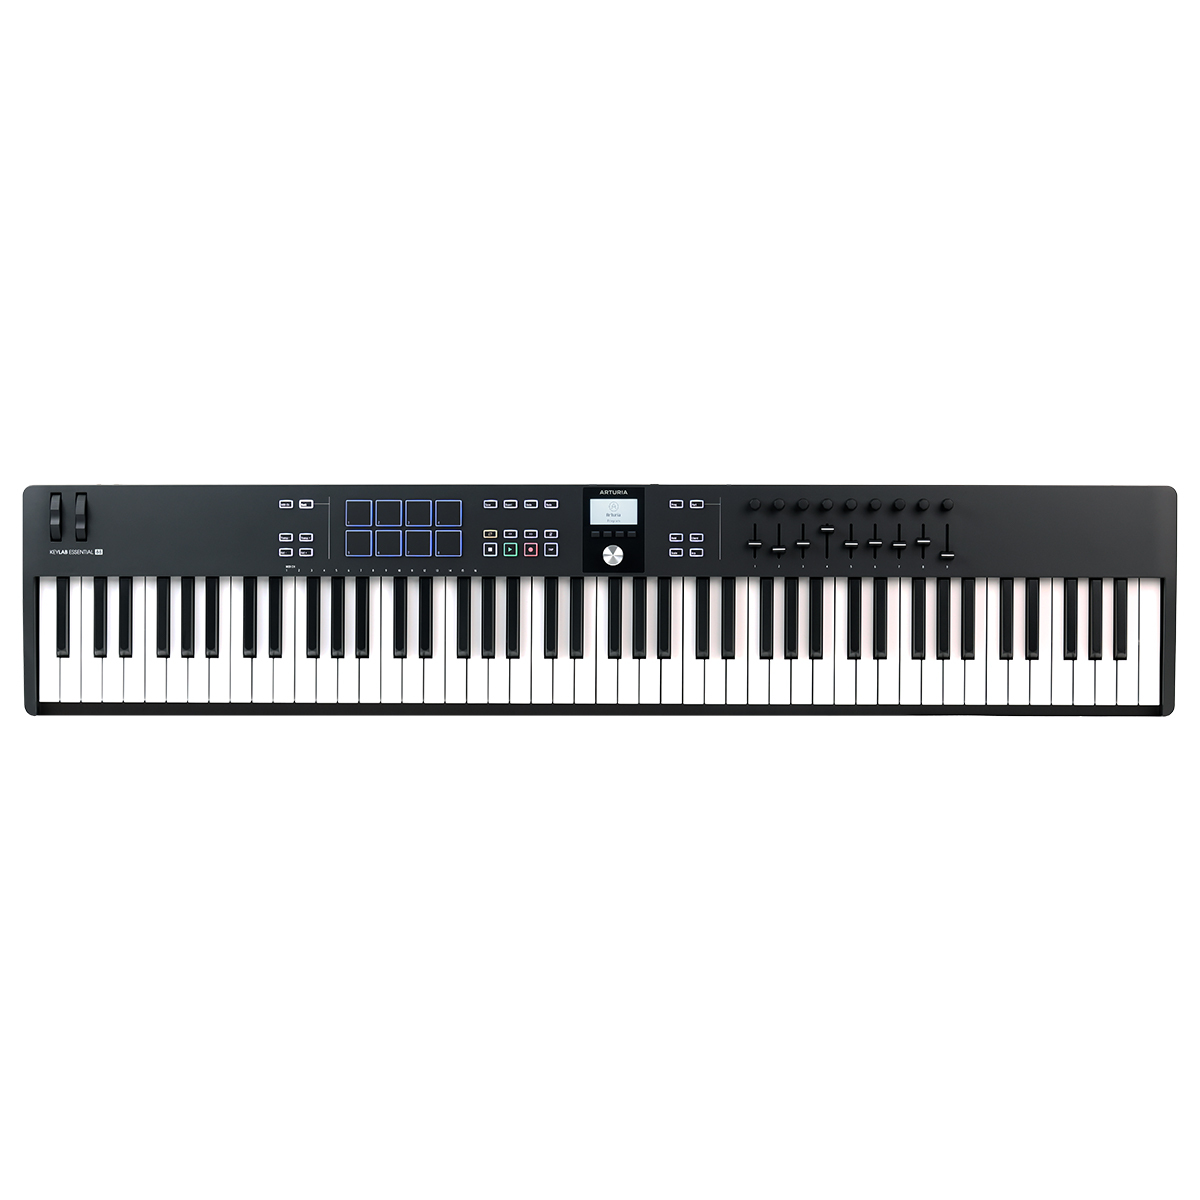 An image of Arturia Keylab Essential 88 MK3 MIDI Keyboard, Black